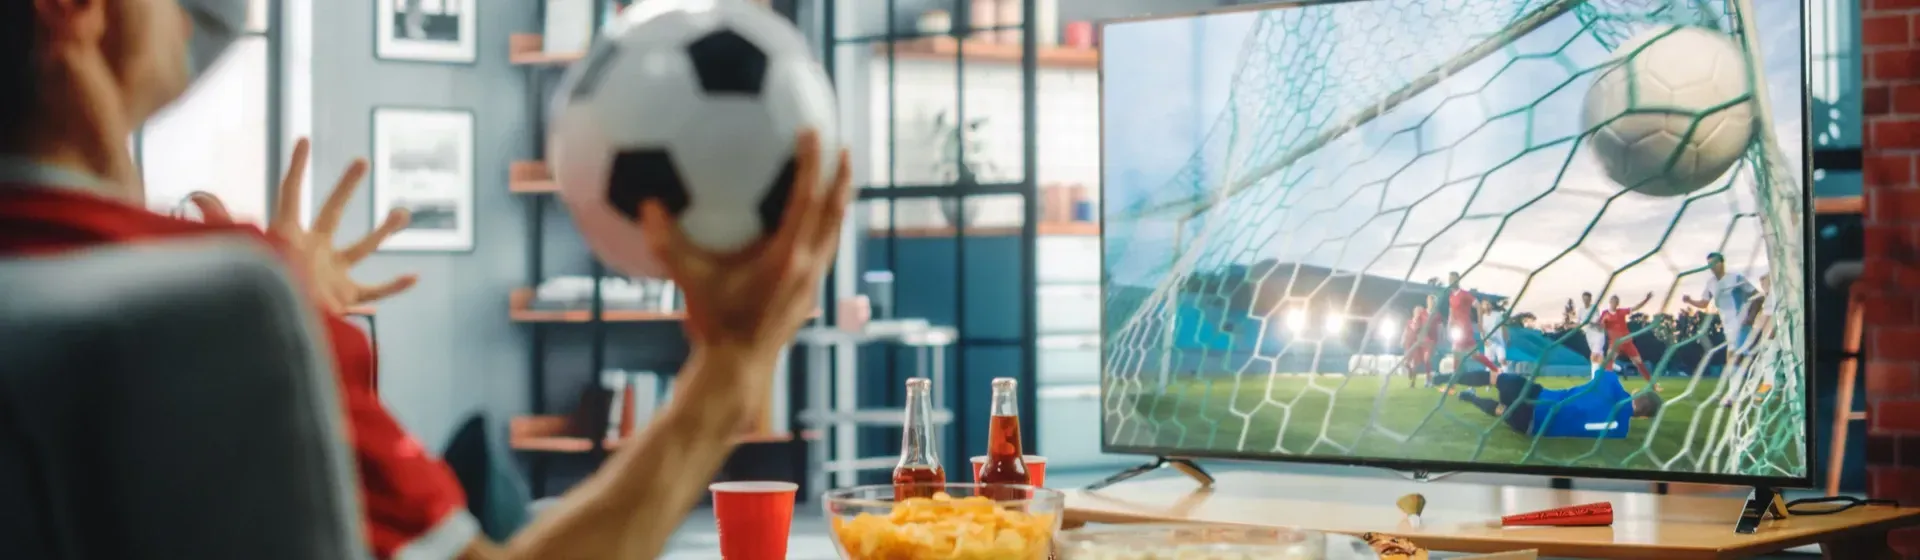 Capa do post: Assistir esportes na TV: o que você precisa ter para criar um estádio em casa